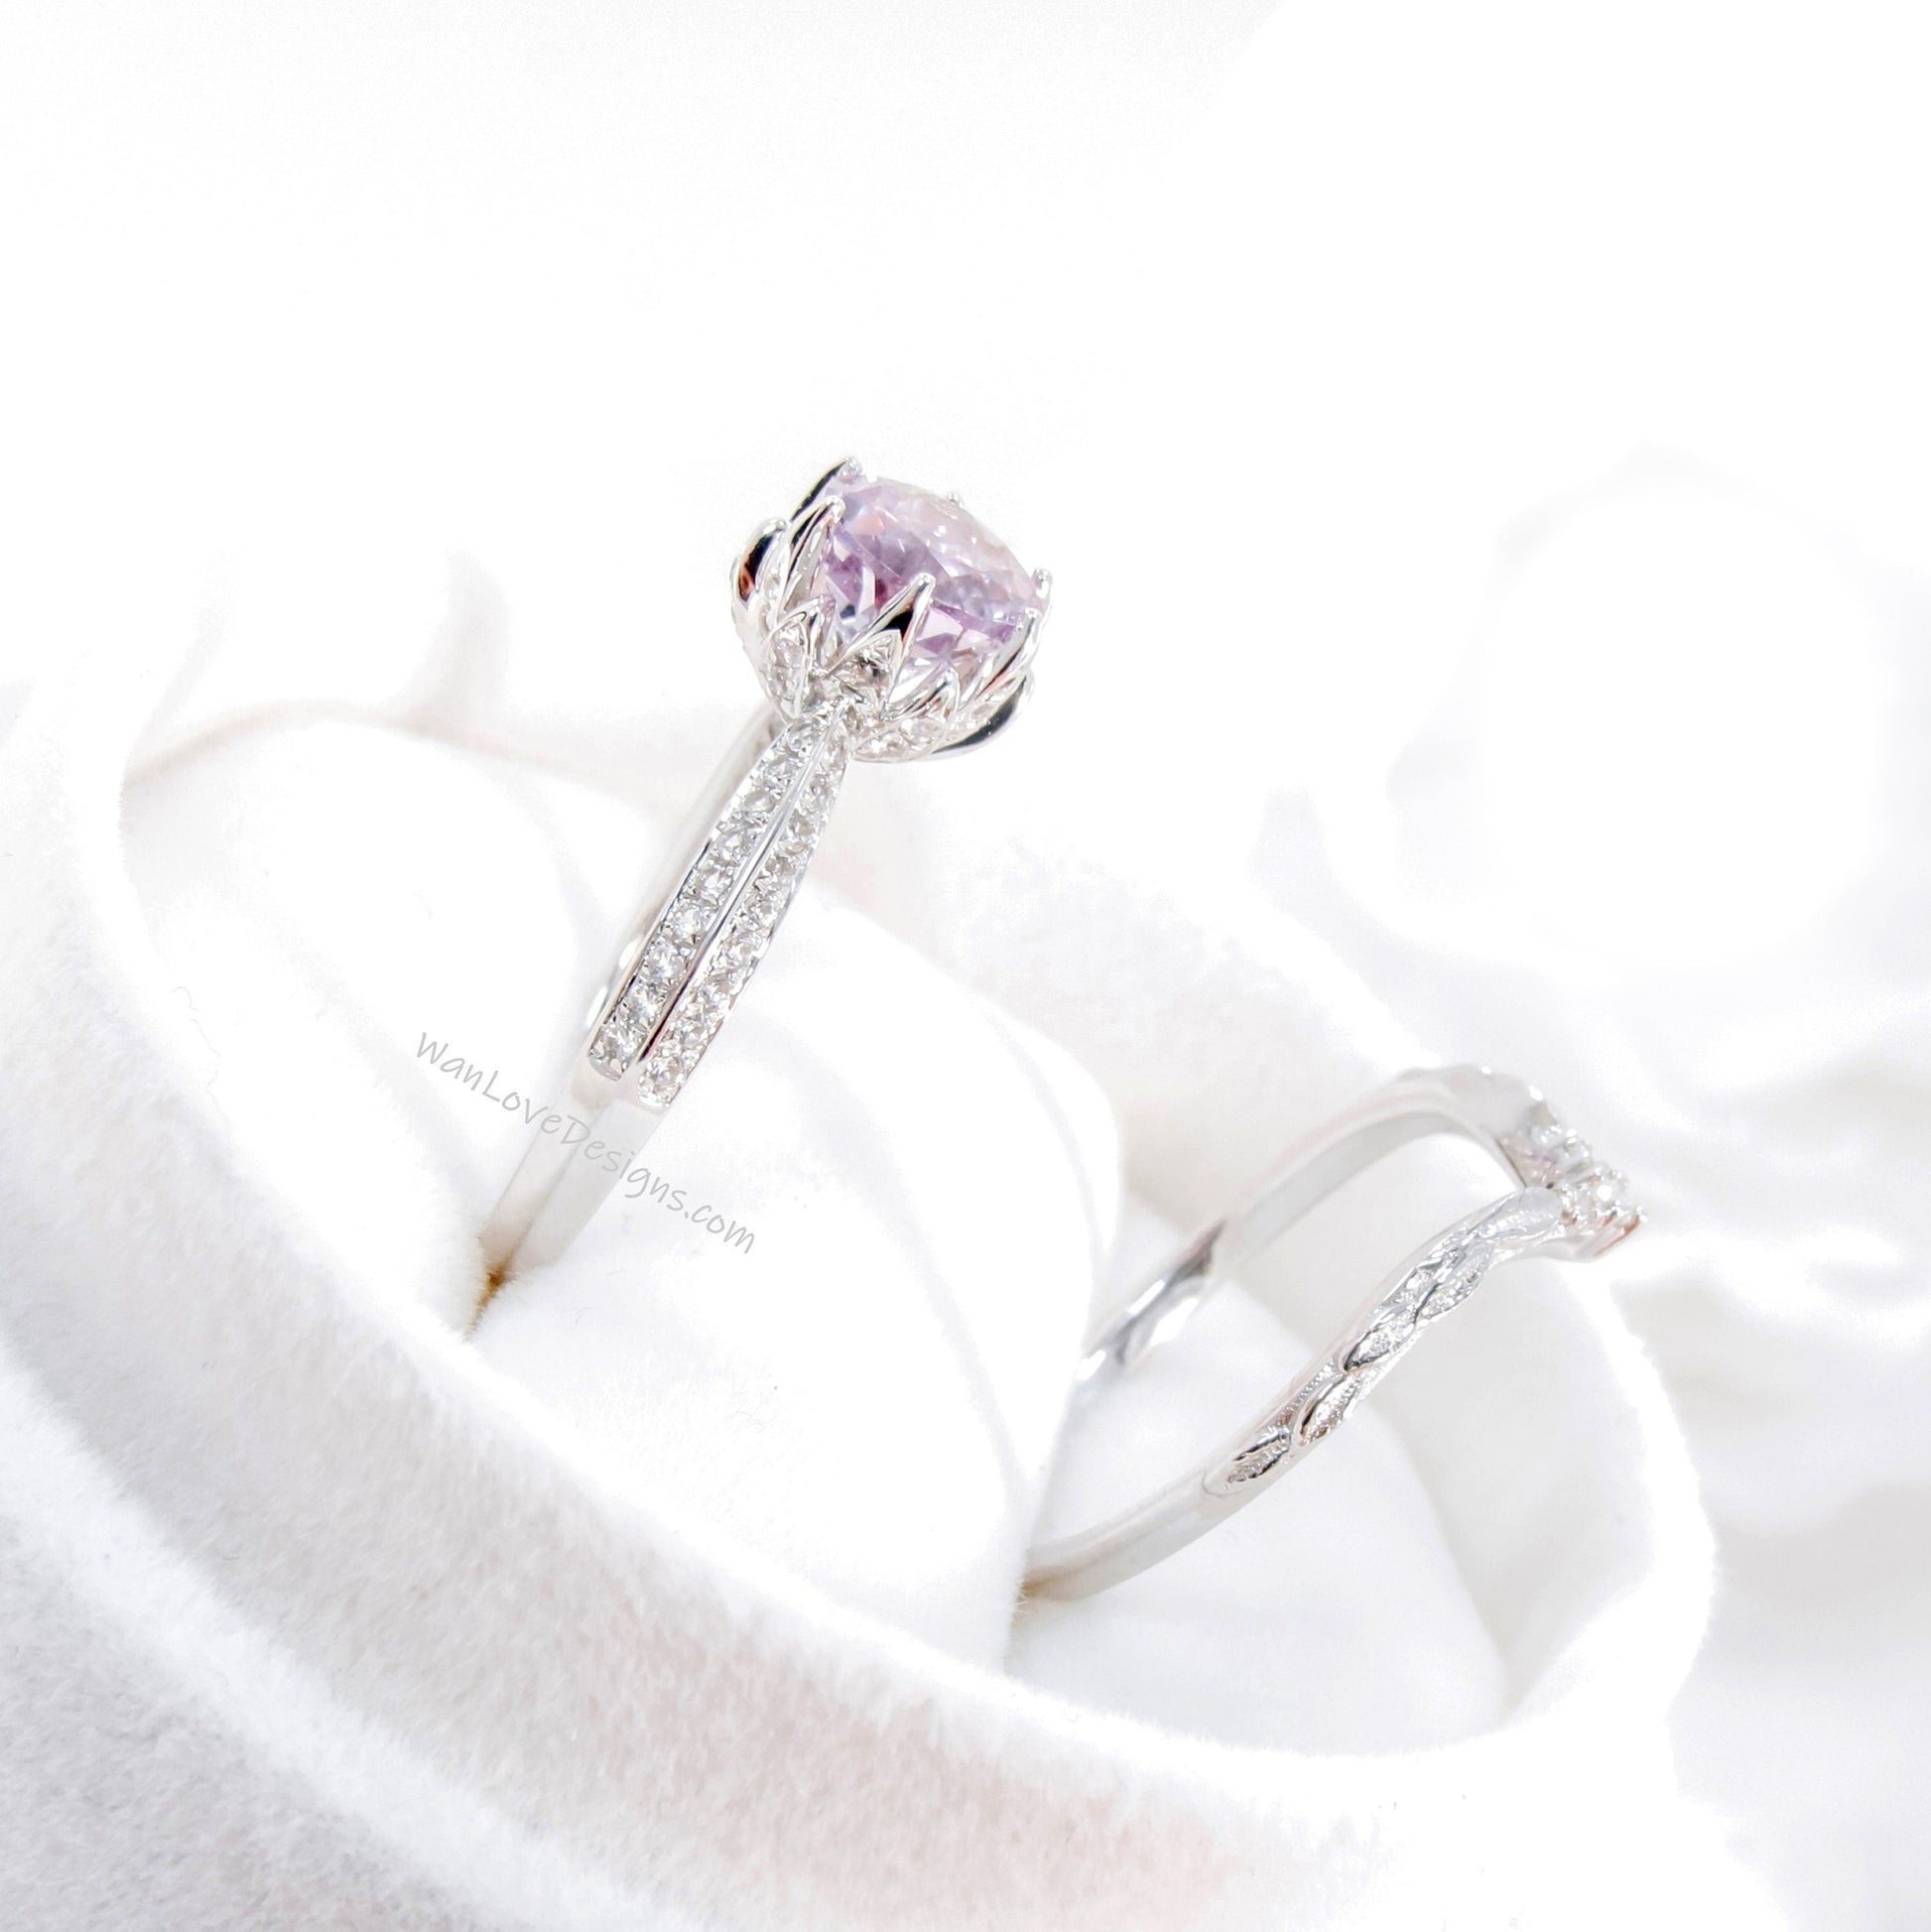 Lotus | 14K Gold Diamond Lotus Ring Set | Peach Sapphire 14k Flower Ring | Lotus Flower Ring Set | Curved Leaf Wedding Band | Bridal Gift Wan Love Designs